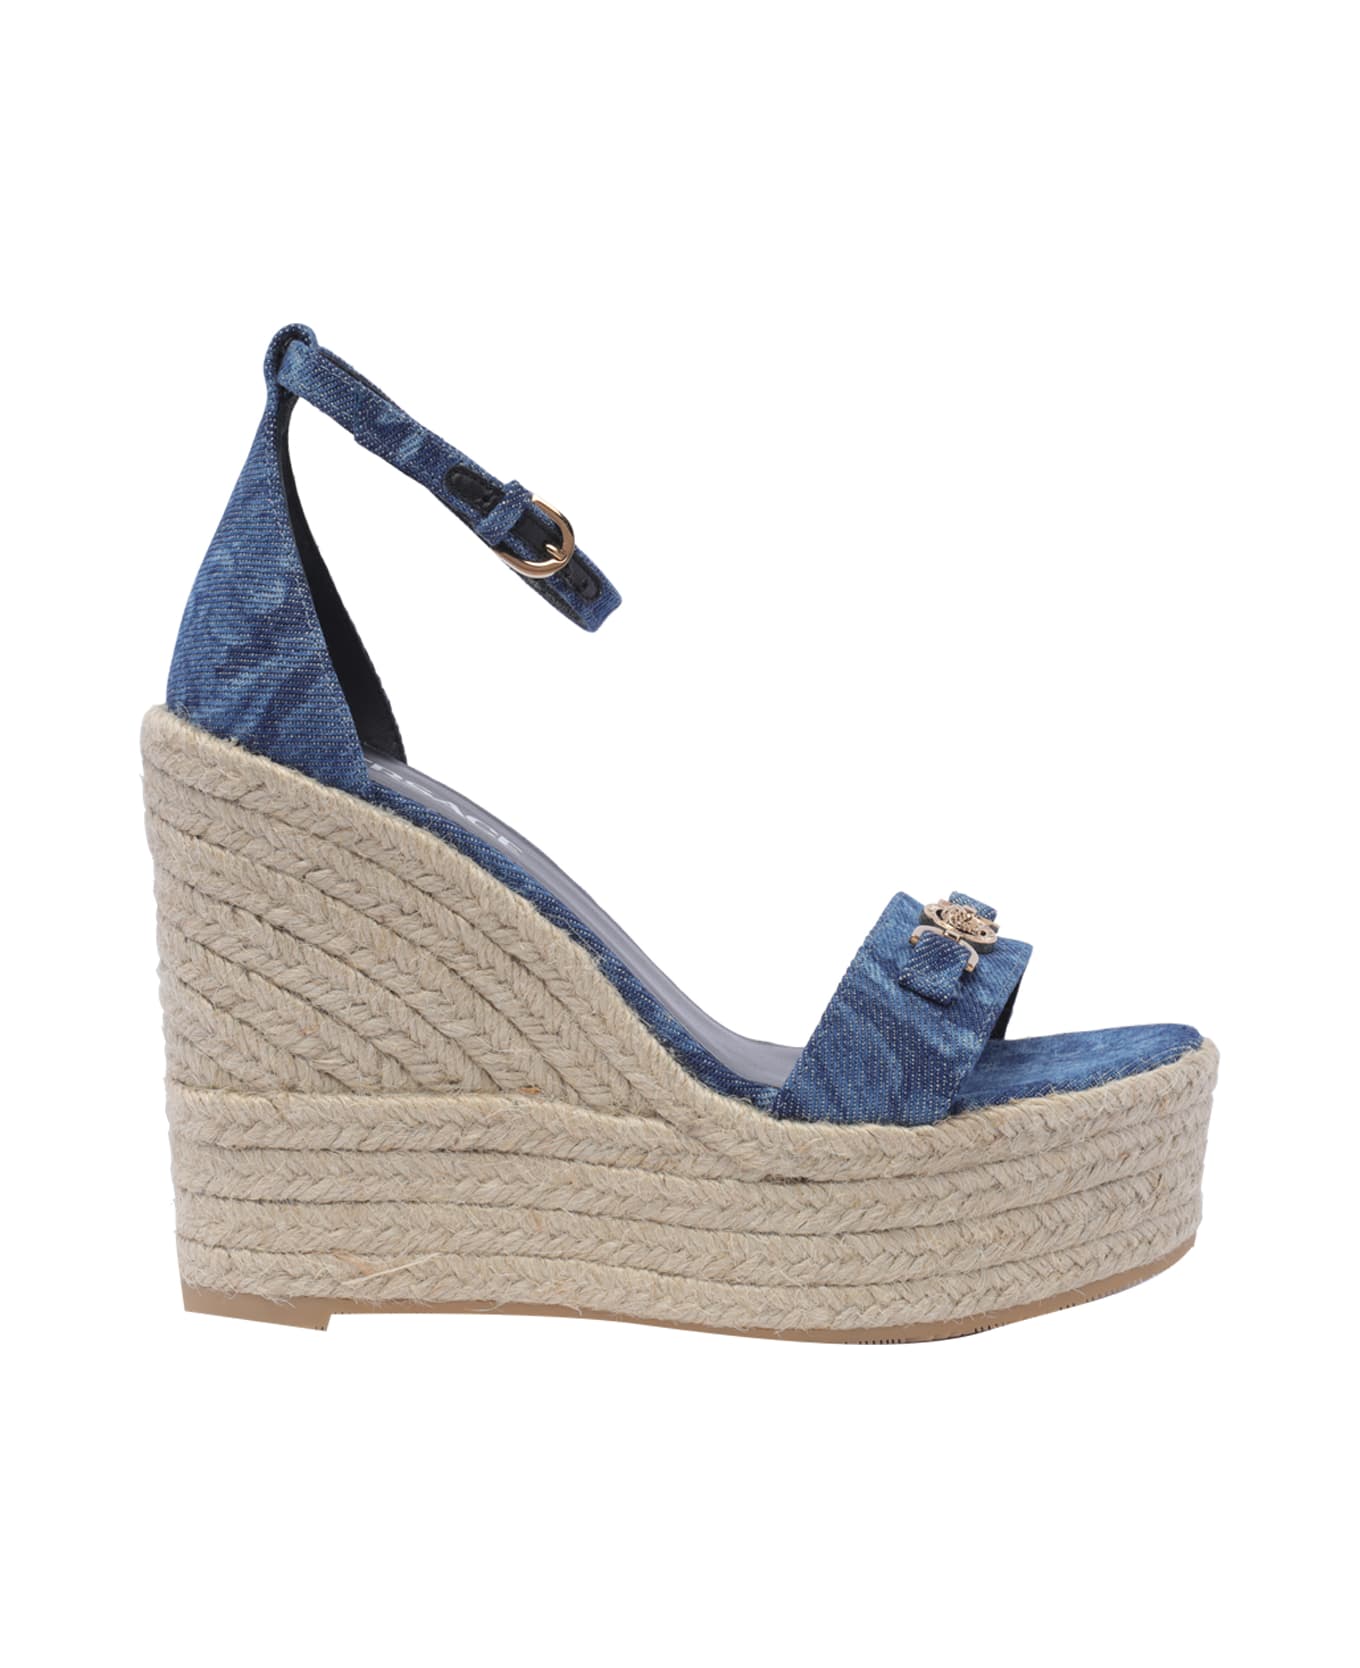 Versace Denim Wedge Sandals 120 - Blue